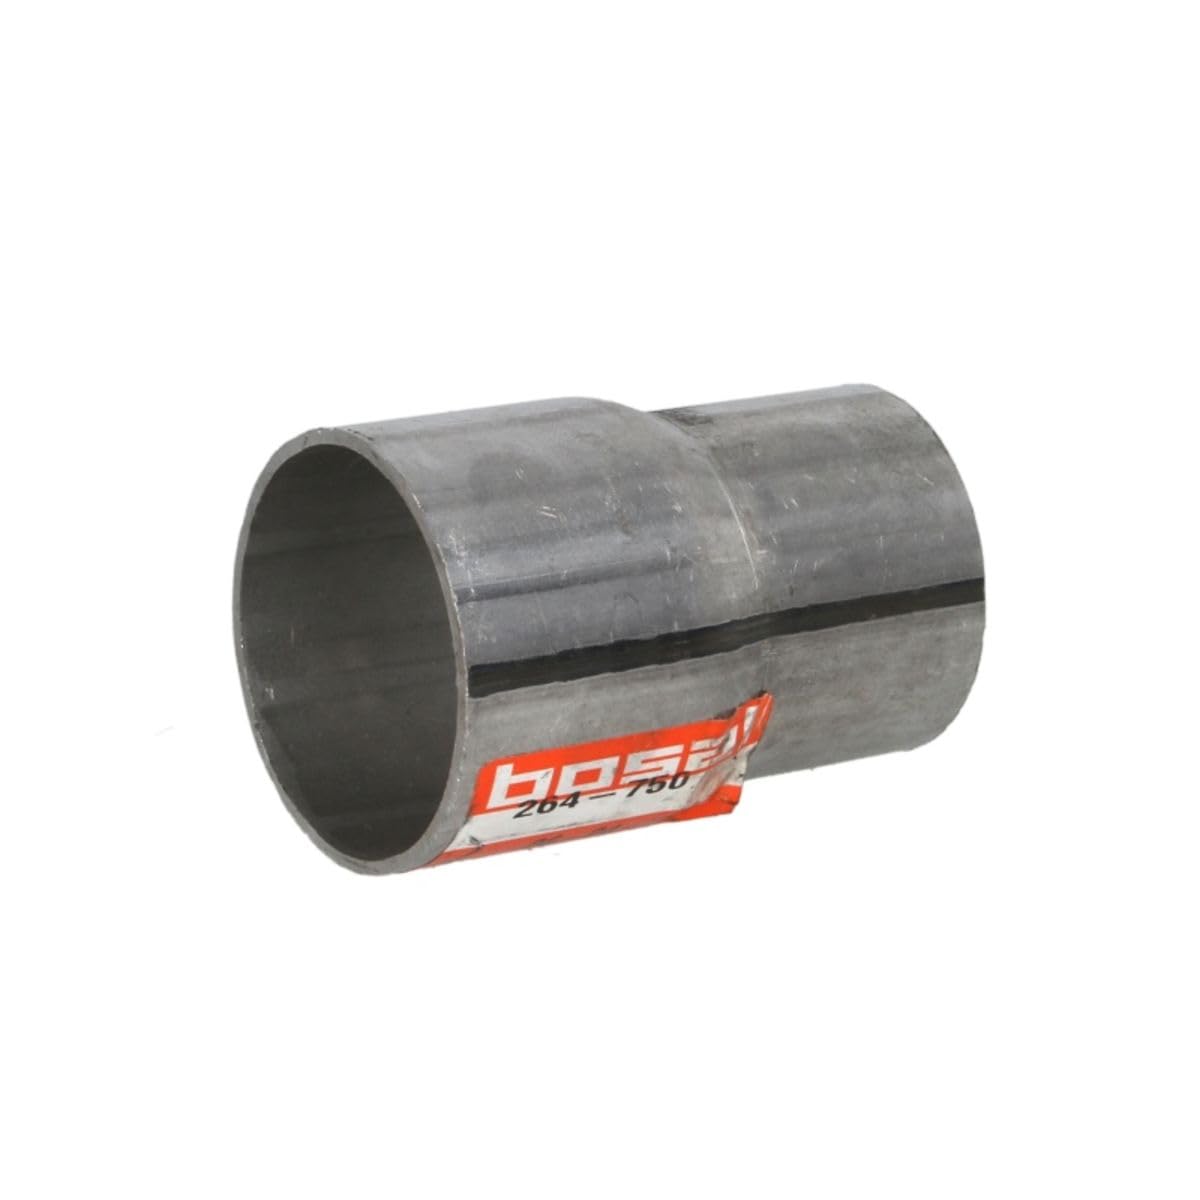 Bosal 264-750 Rohrverbinder für Abgasanlage, 50mm Durchmesser, 80mm Länge von Bosal